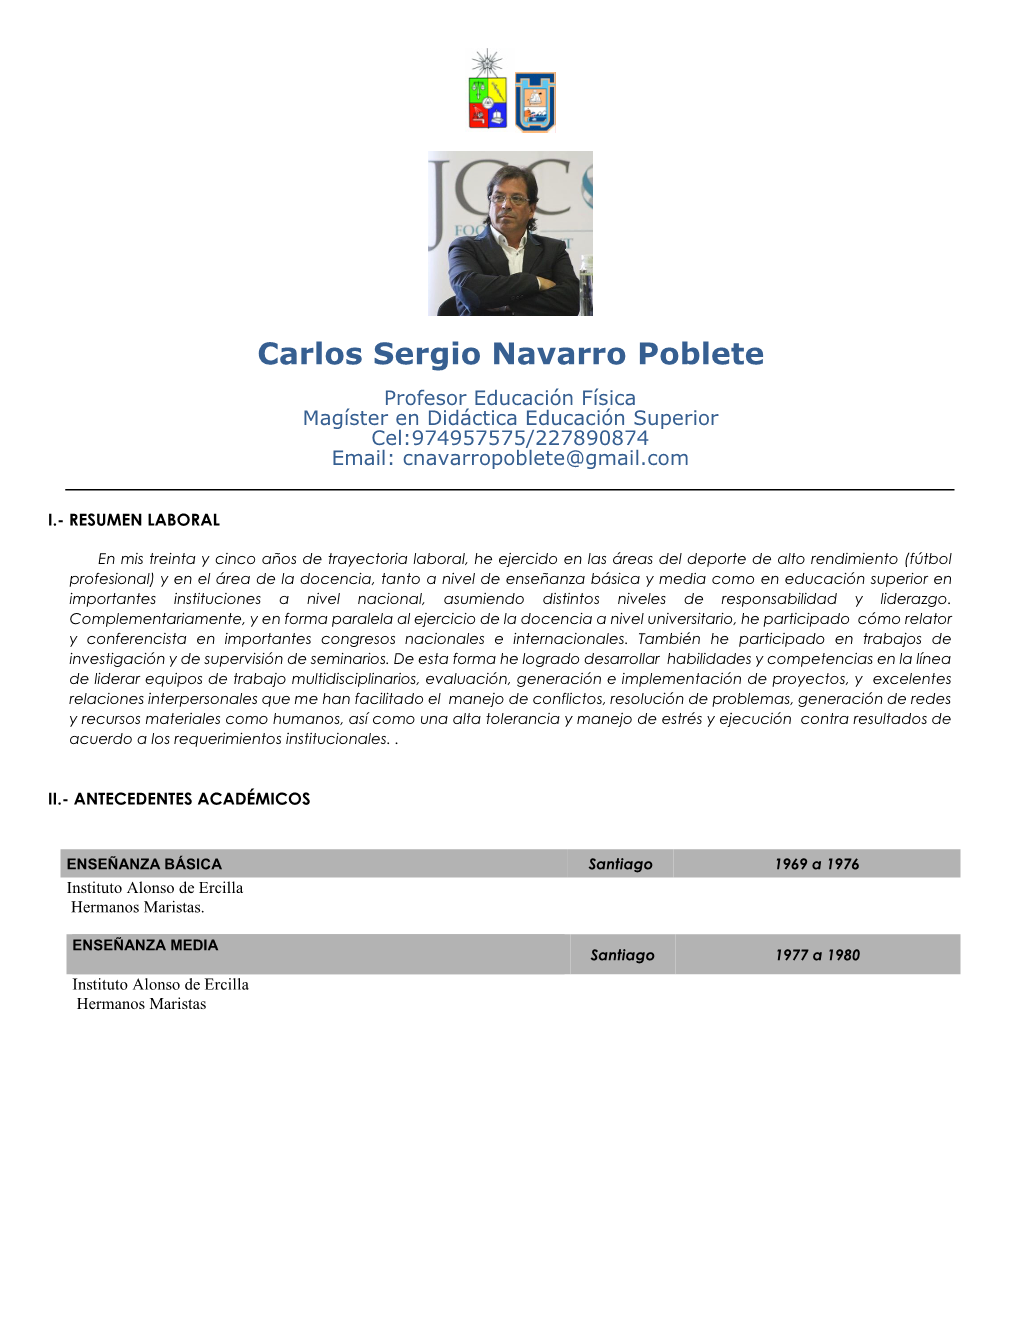 Carlos Sergio Navarro Poblete Profesor Educación Física Magíster En Didáctica Educación Superior Cel:974957575/227890874 Email: Cnavarropoblete@Gmail.Com